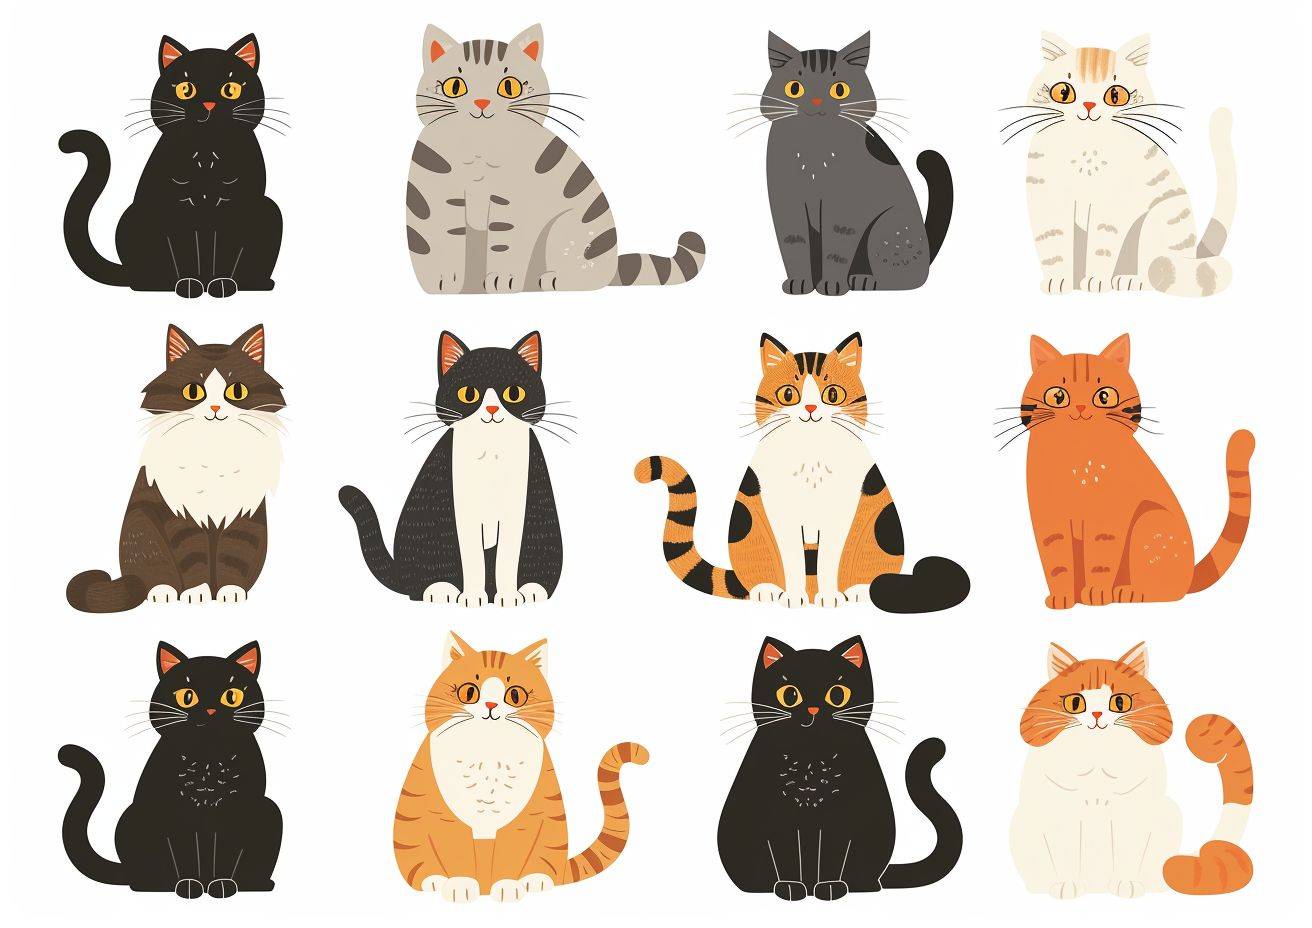 異なる色の四角形の白い背景に、フワフワとしたカートゥーンのさまざまな猫の種類の描画があります。スタイルはロウ、アスペクト比は7:5、フレームレートは6、スタイライズ度は250です。